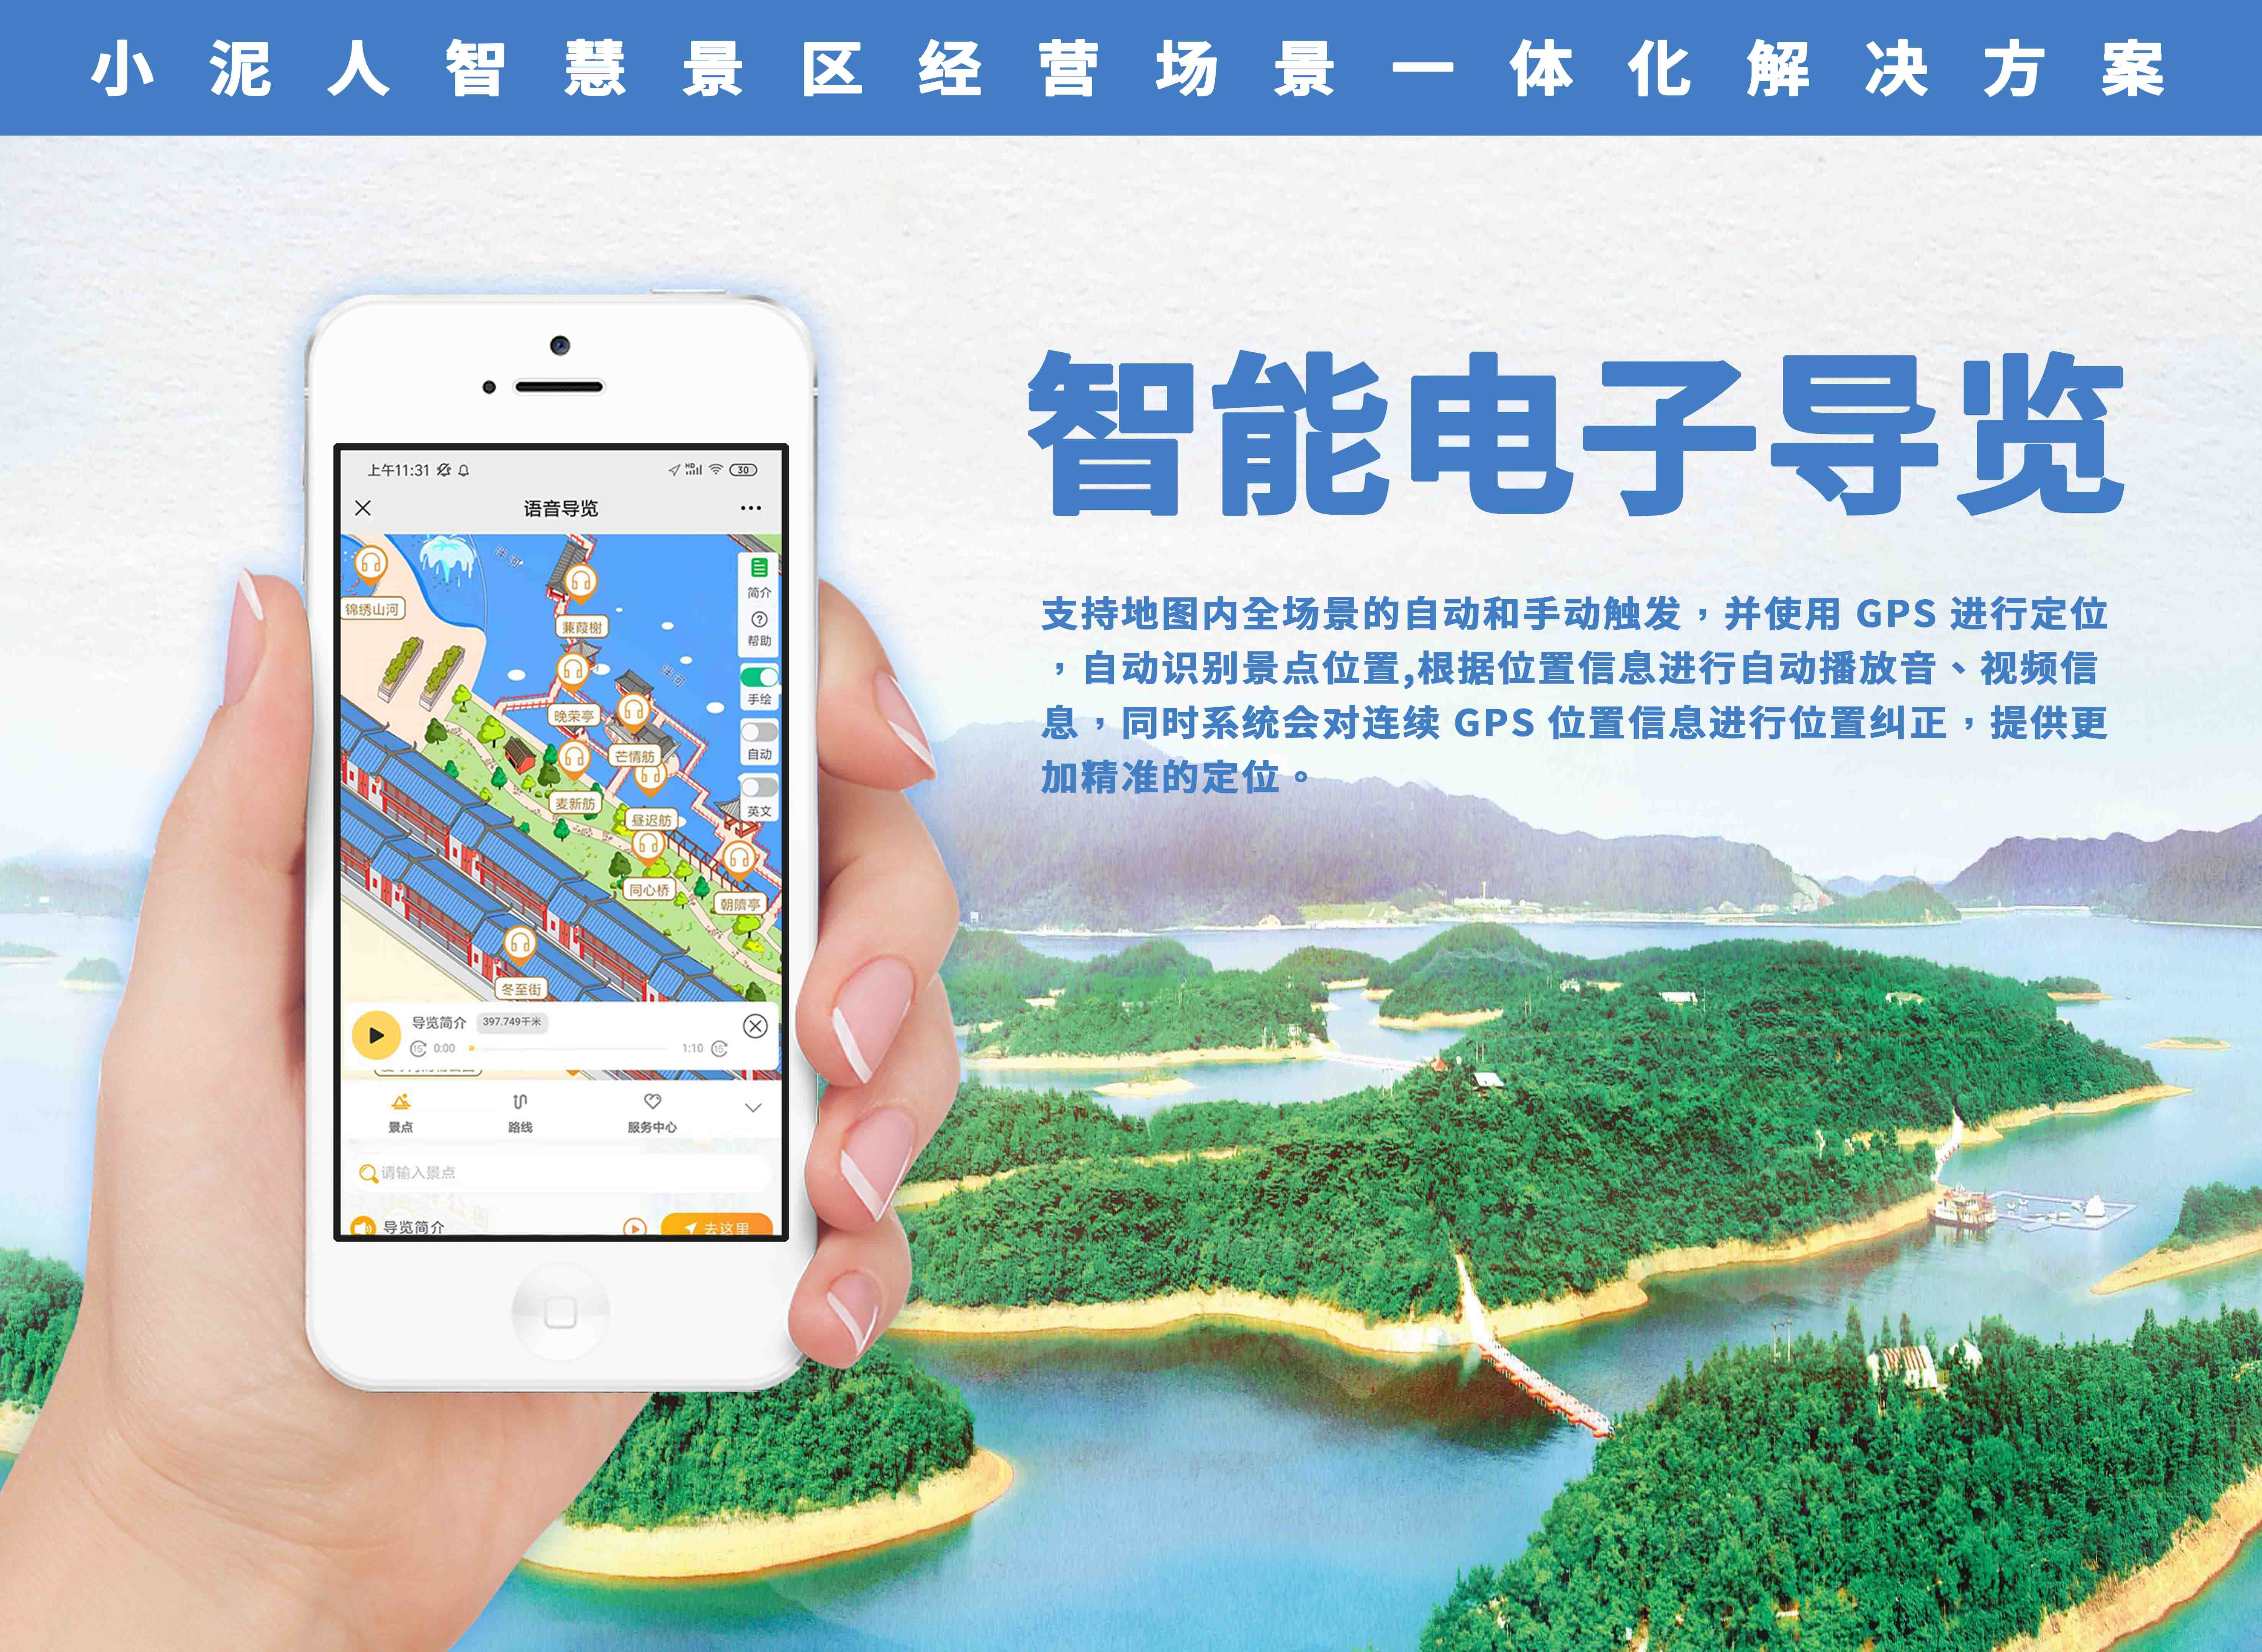 华为鸿蒙系统联合小泥人推出旅游超级应用小程序.jpg